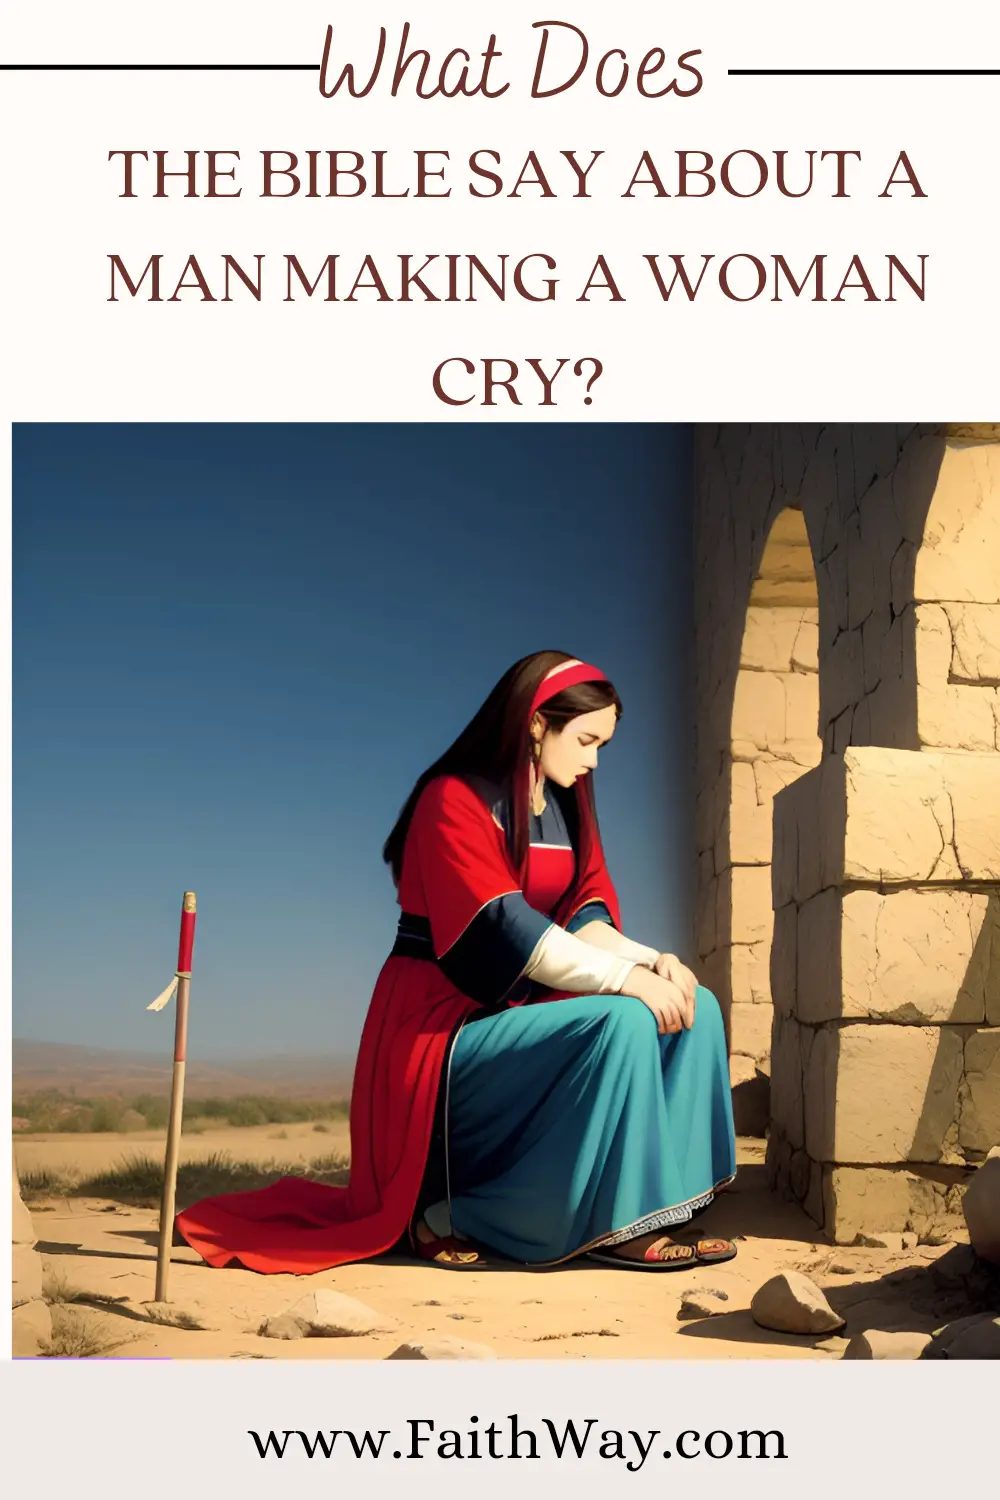 ¿Qué dice la Biblia acerca de un hombre que hace llorar a una mujer? -